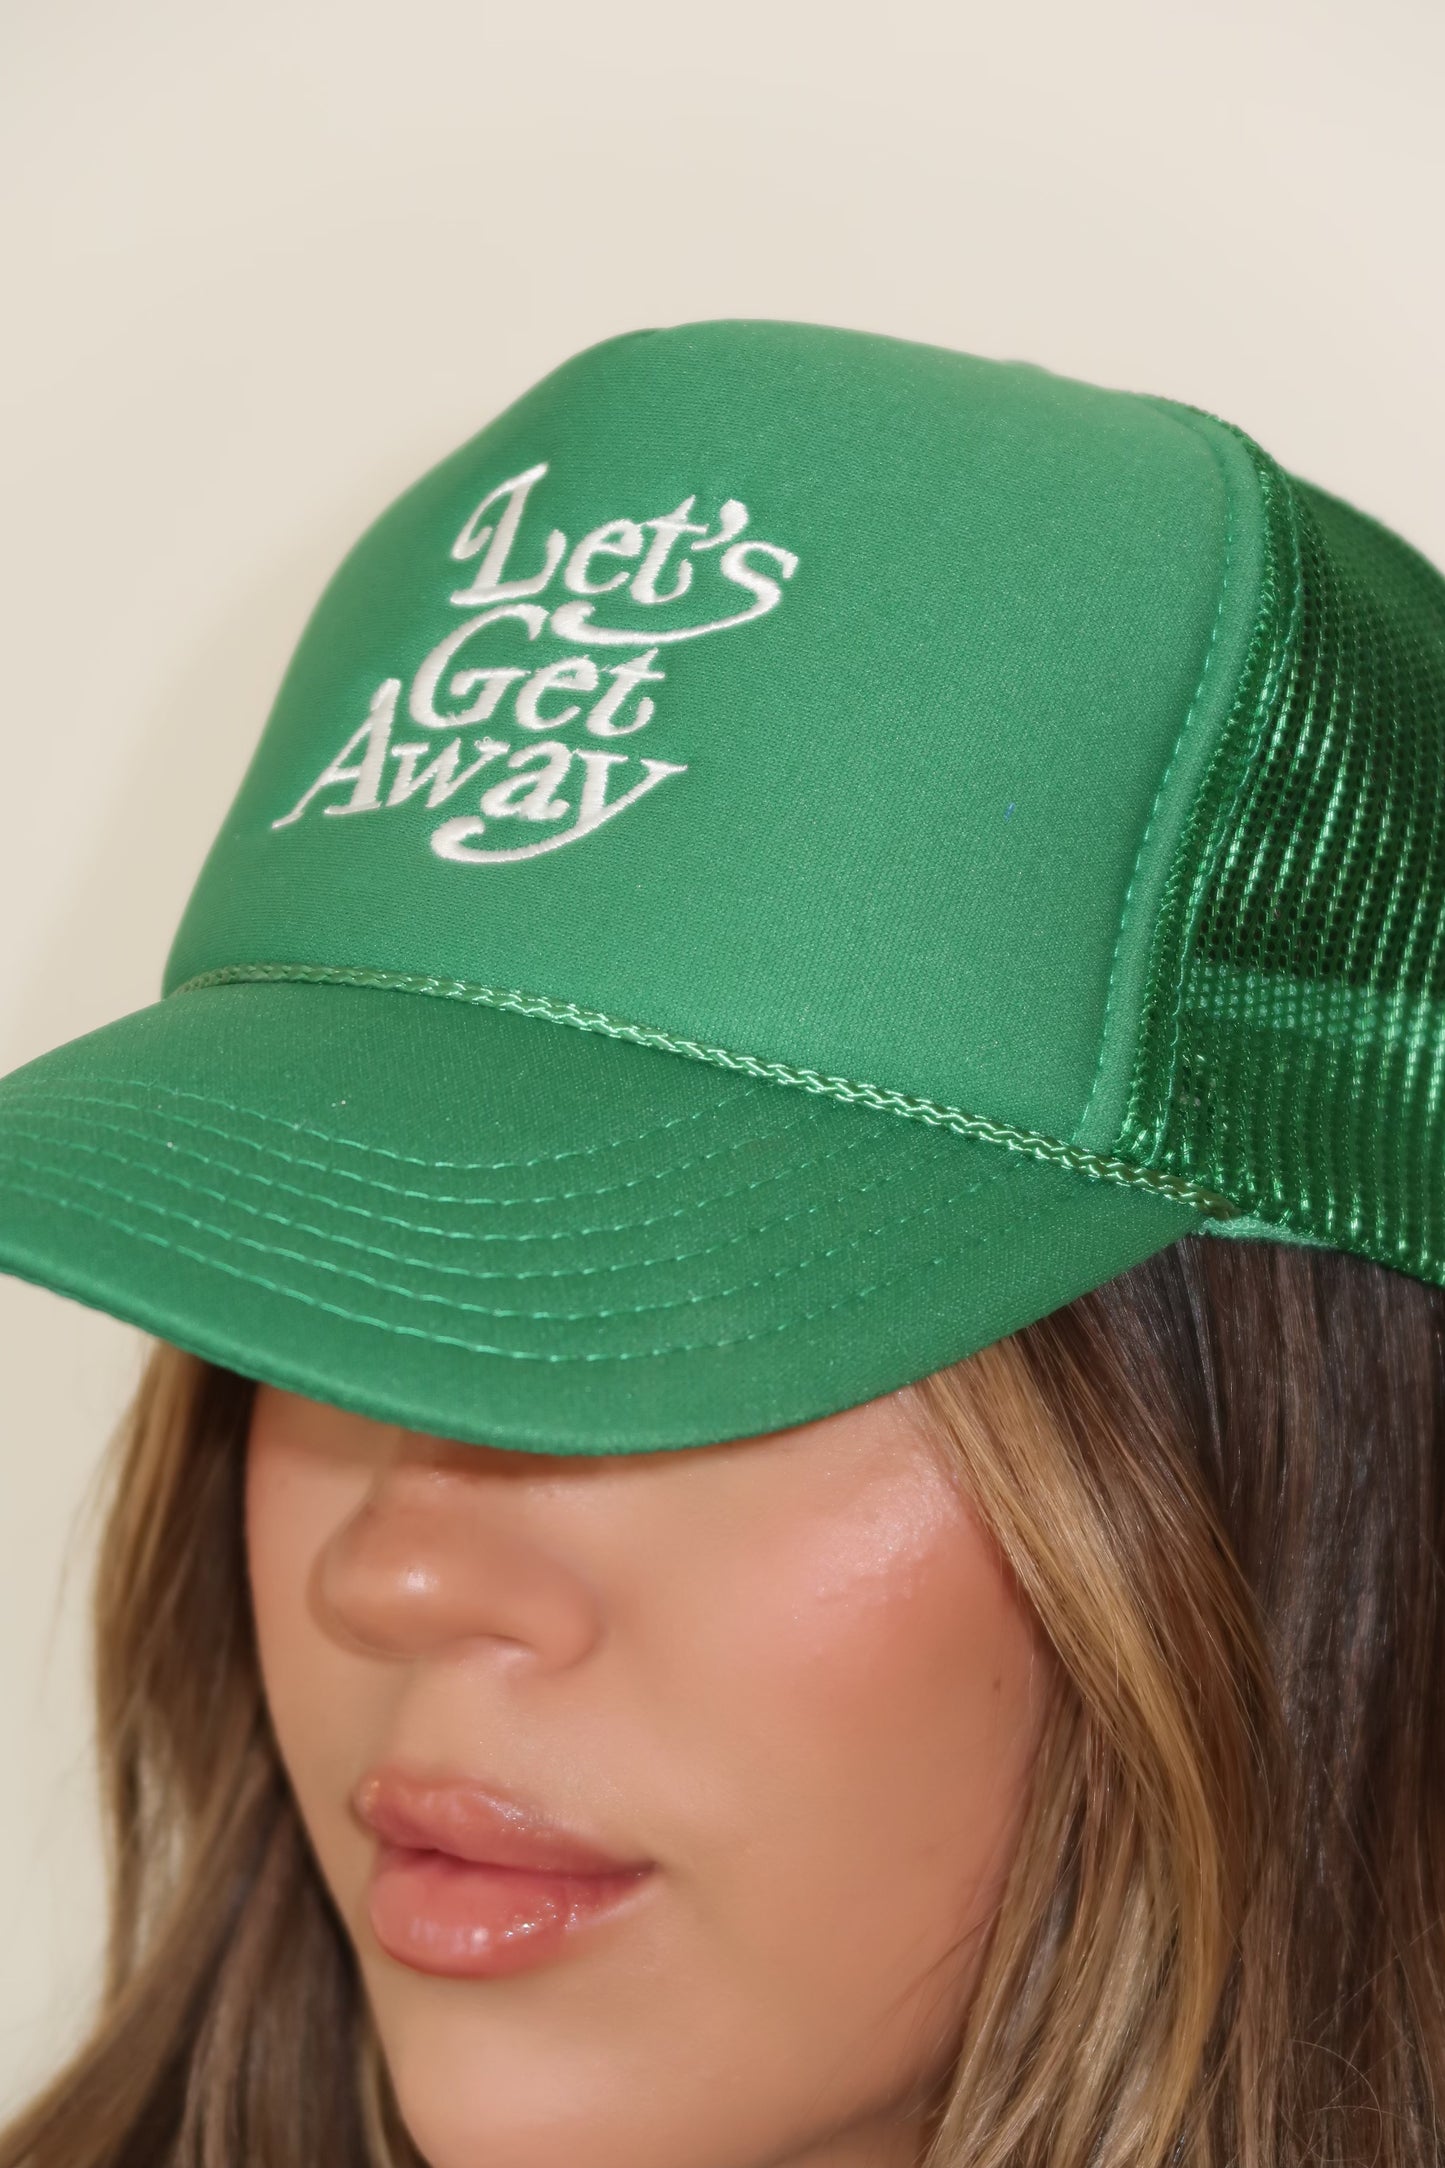 GREEN LET'S GET AWAY HAT